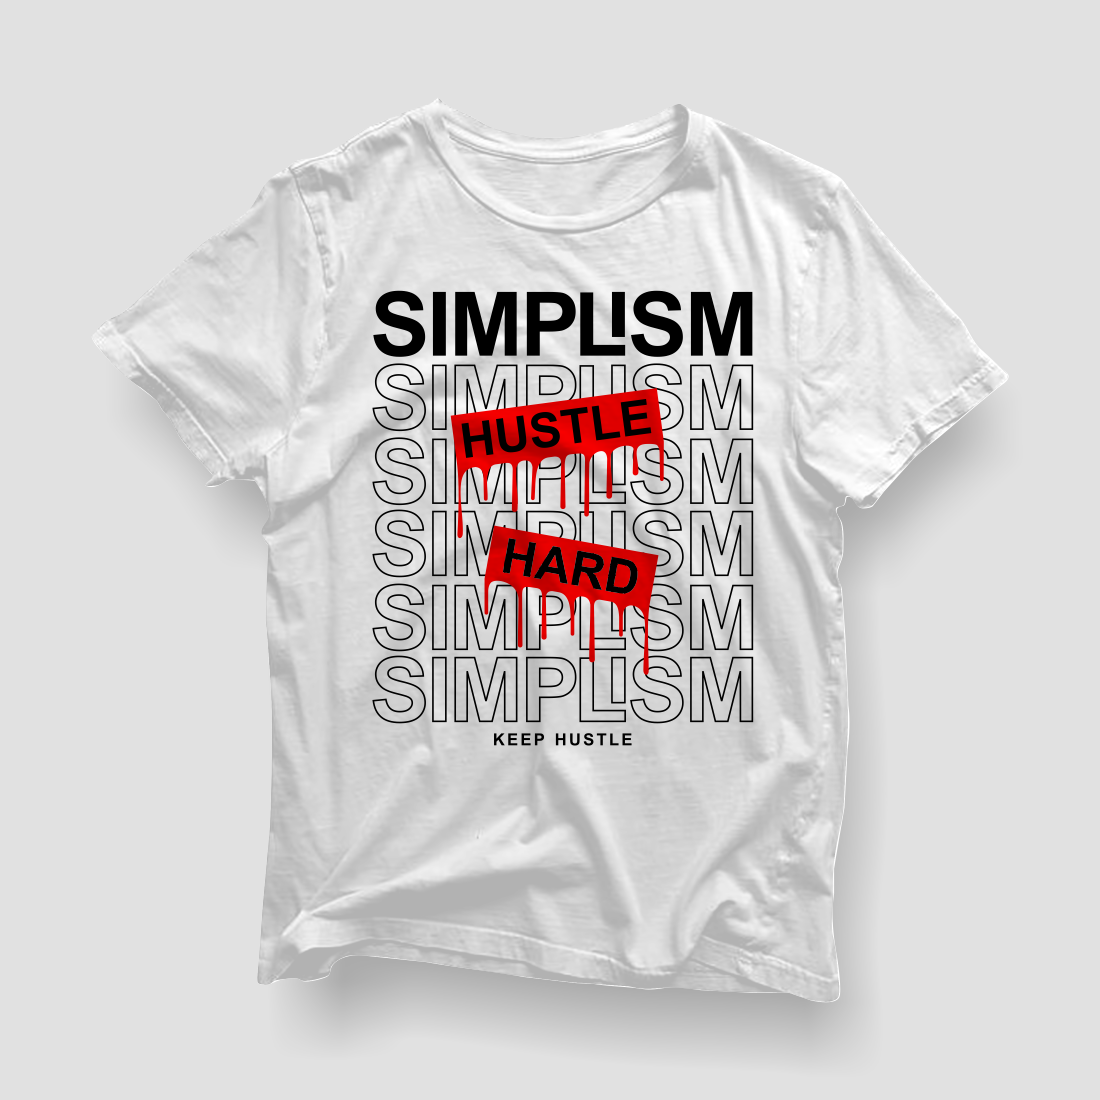 Simplism, Hustle Hard - Lettering Typography T shirt Design